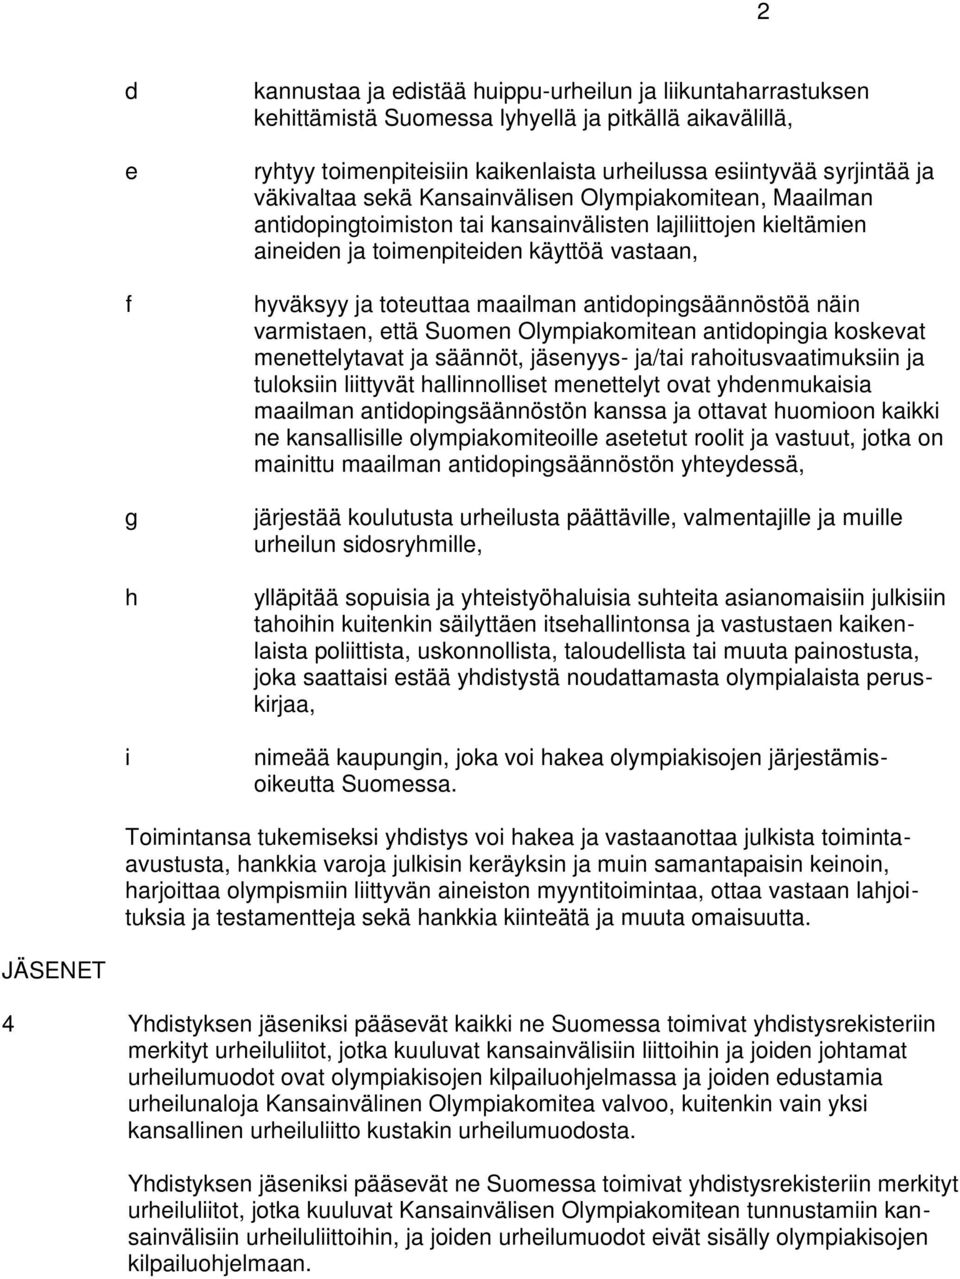 antidopingsäännöstöä näin varmistaen, että Suomen Olympiakomitean antidopingia koskevat menettelytavat ja säännöt, jäsenyys- ja/tai rahoitusvaatimuksiin ja tuloksiin liittyvät hallinnolliset